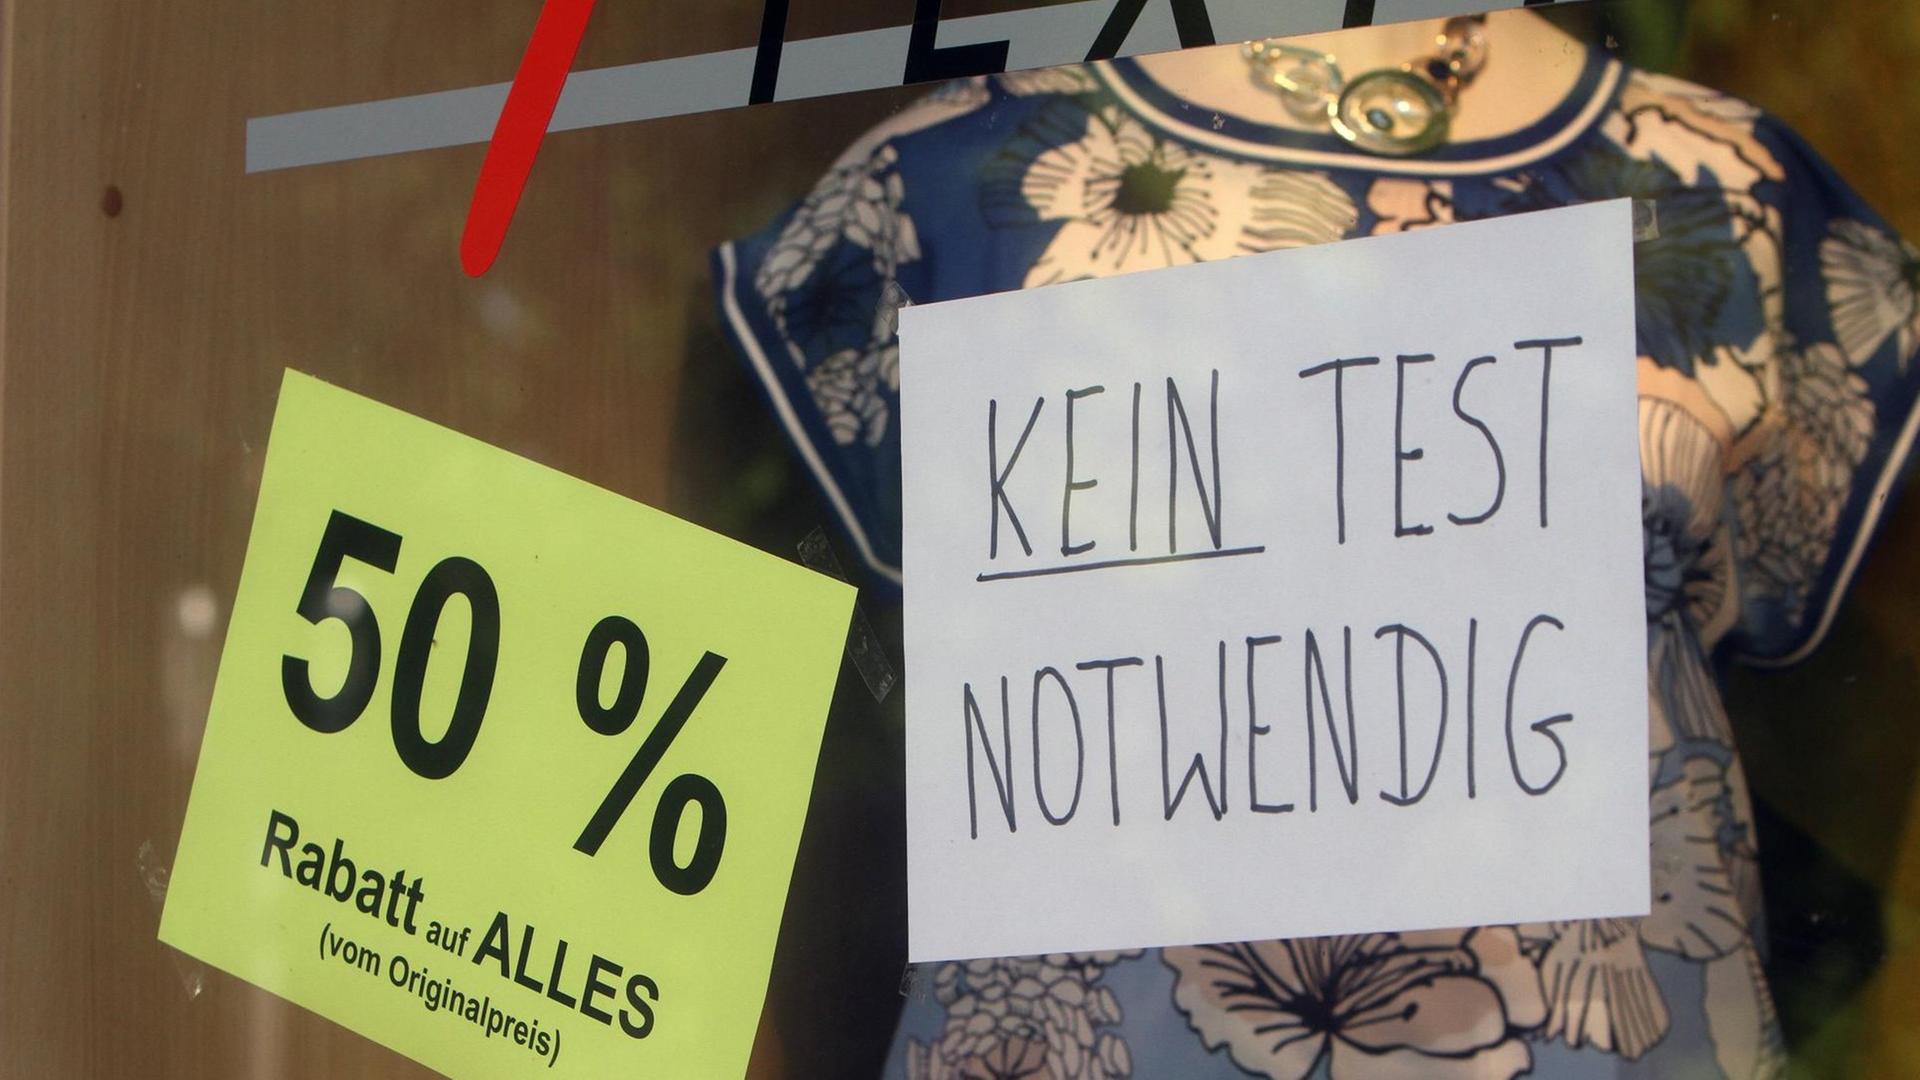 Ein Zettel mit Aufschrift "Kein Test notwendig" klebt im Schaufenster eines Modegeschäfts in der Innenstadt von Bad Nauheim, Hessen.